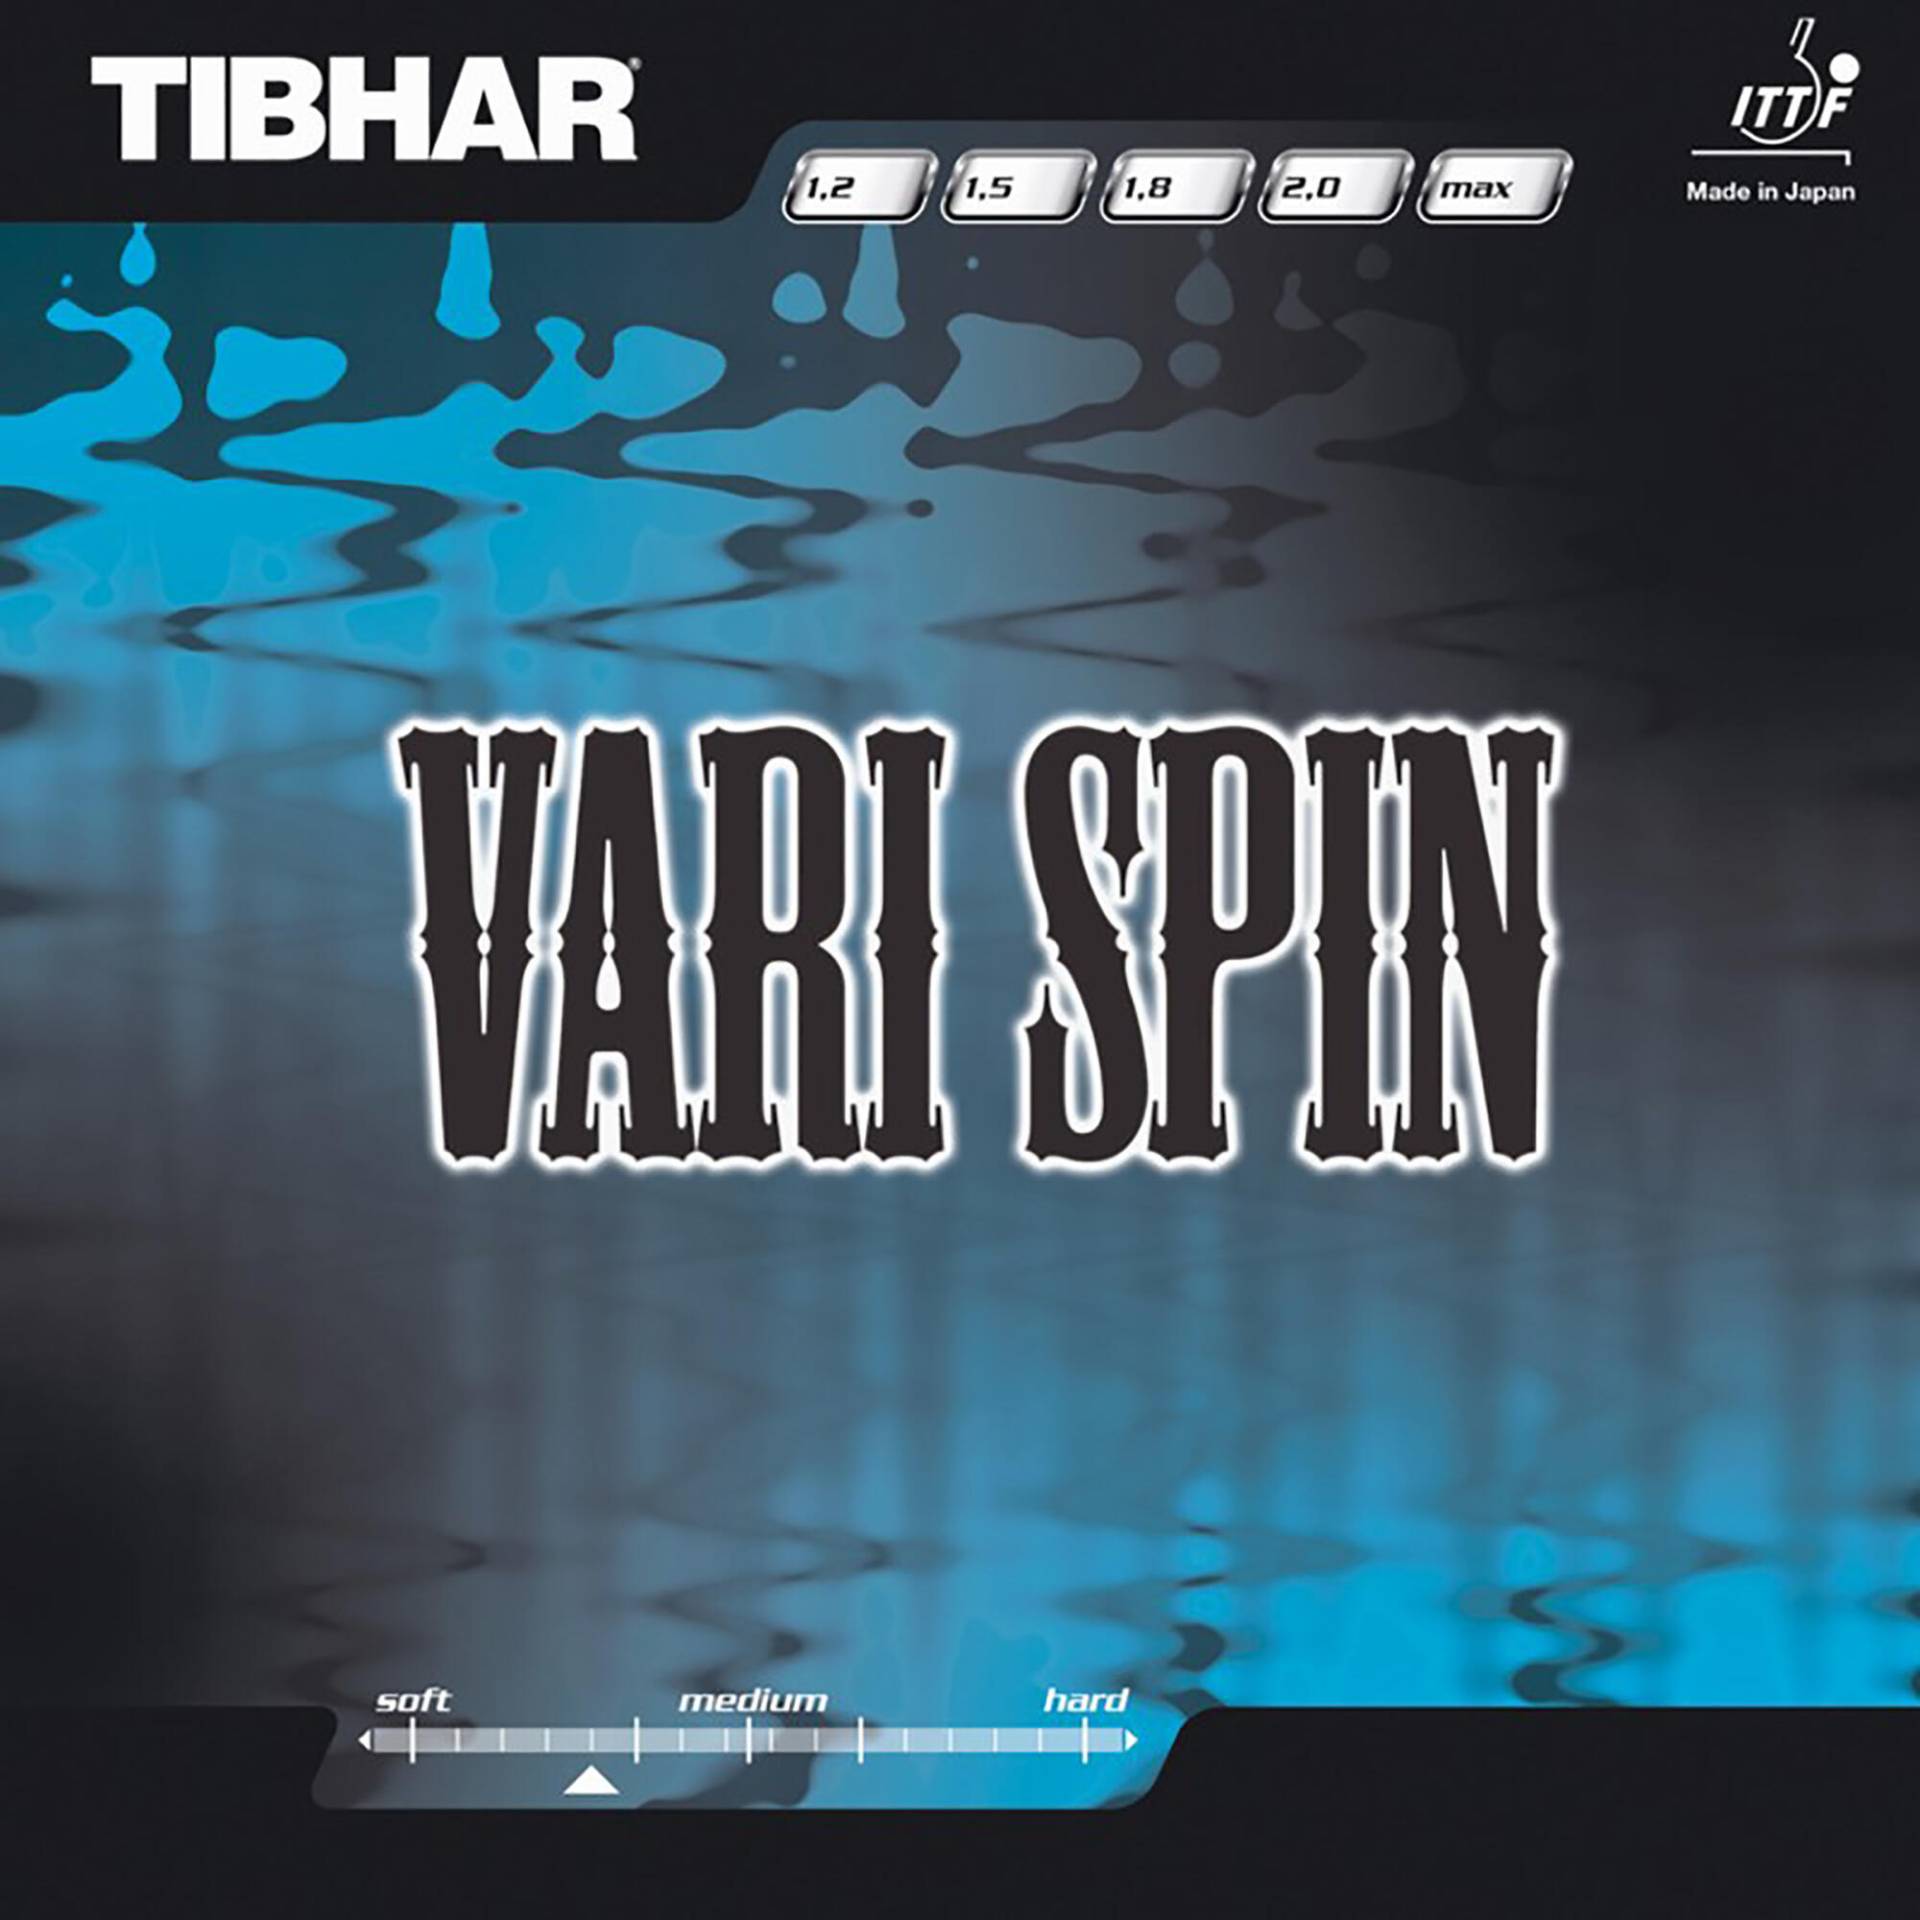 Tischtennisbelag Vari Spin von TIBHAR